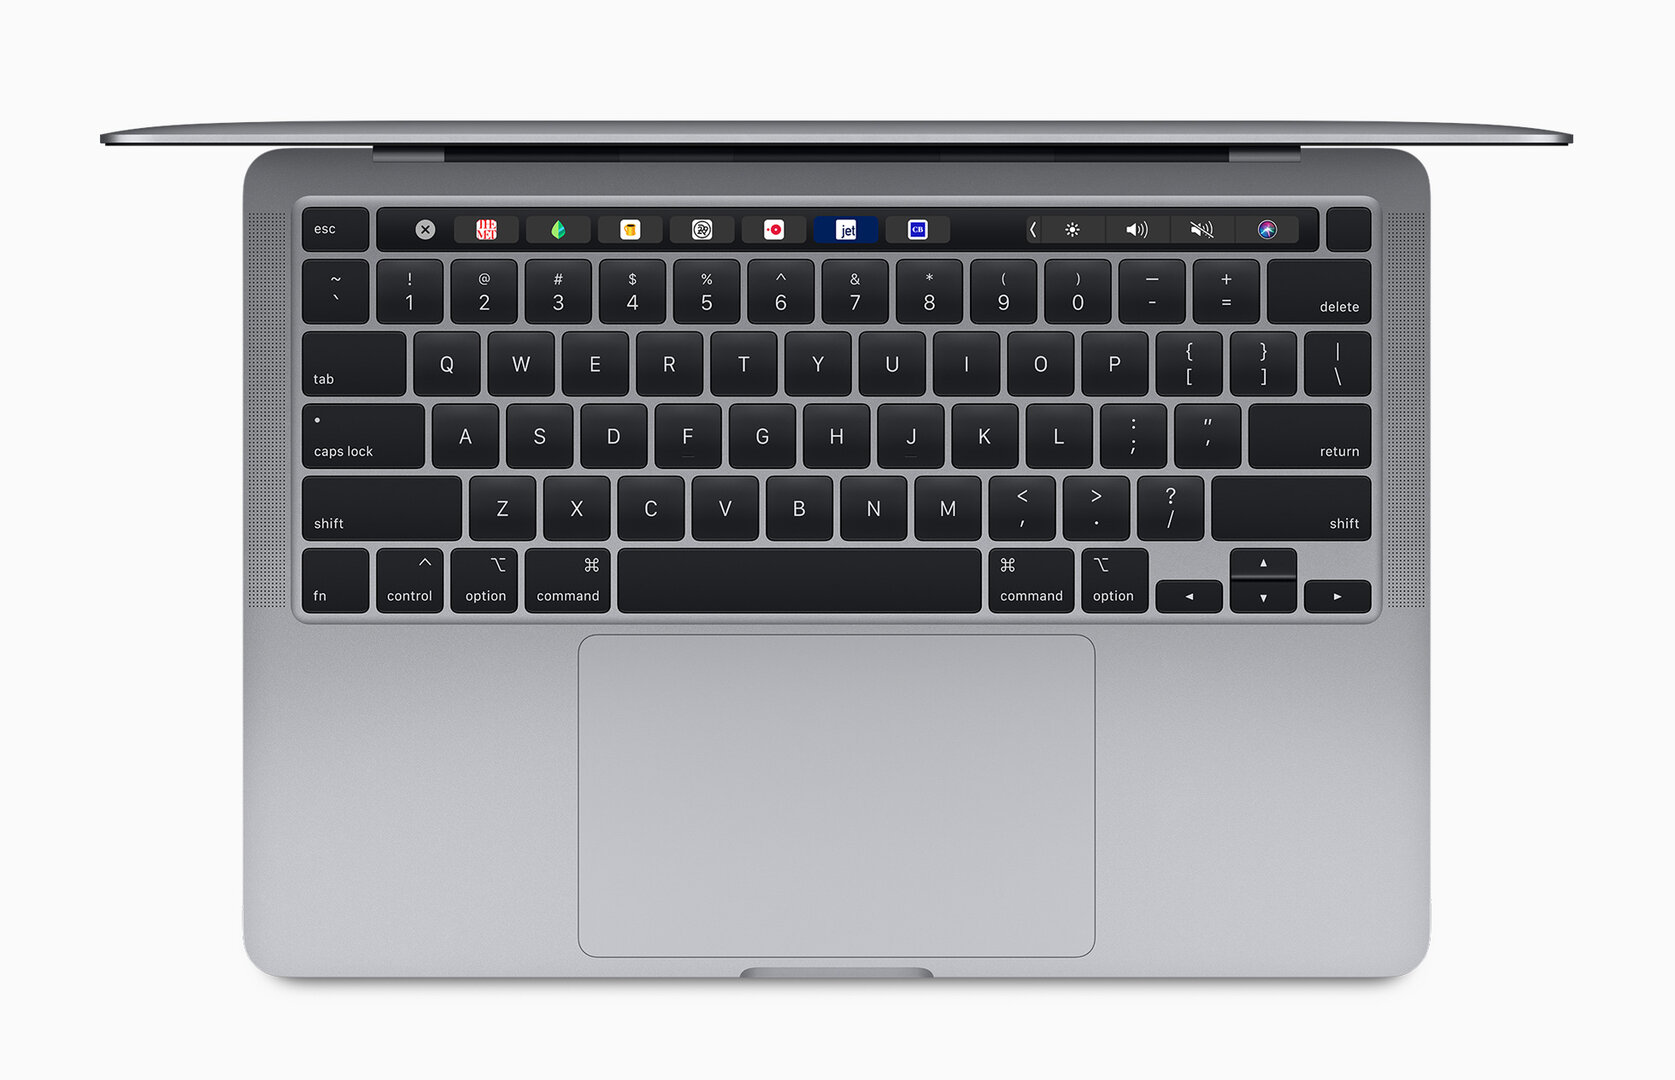 Apple MacBook Pro 13" (2020)